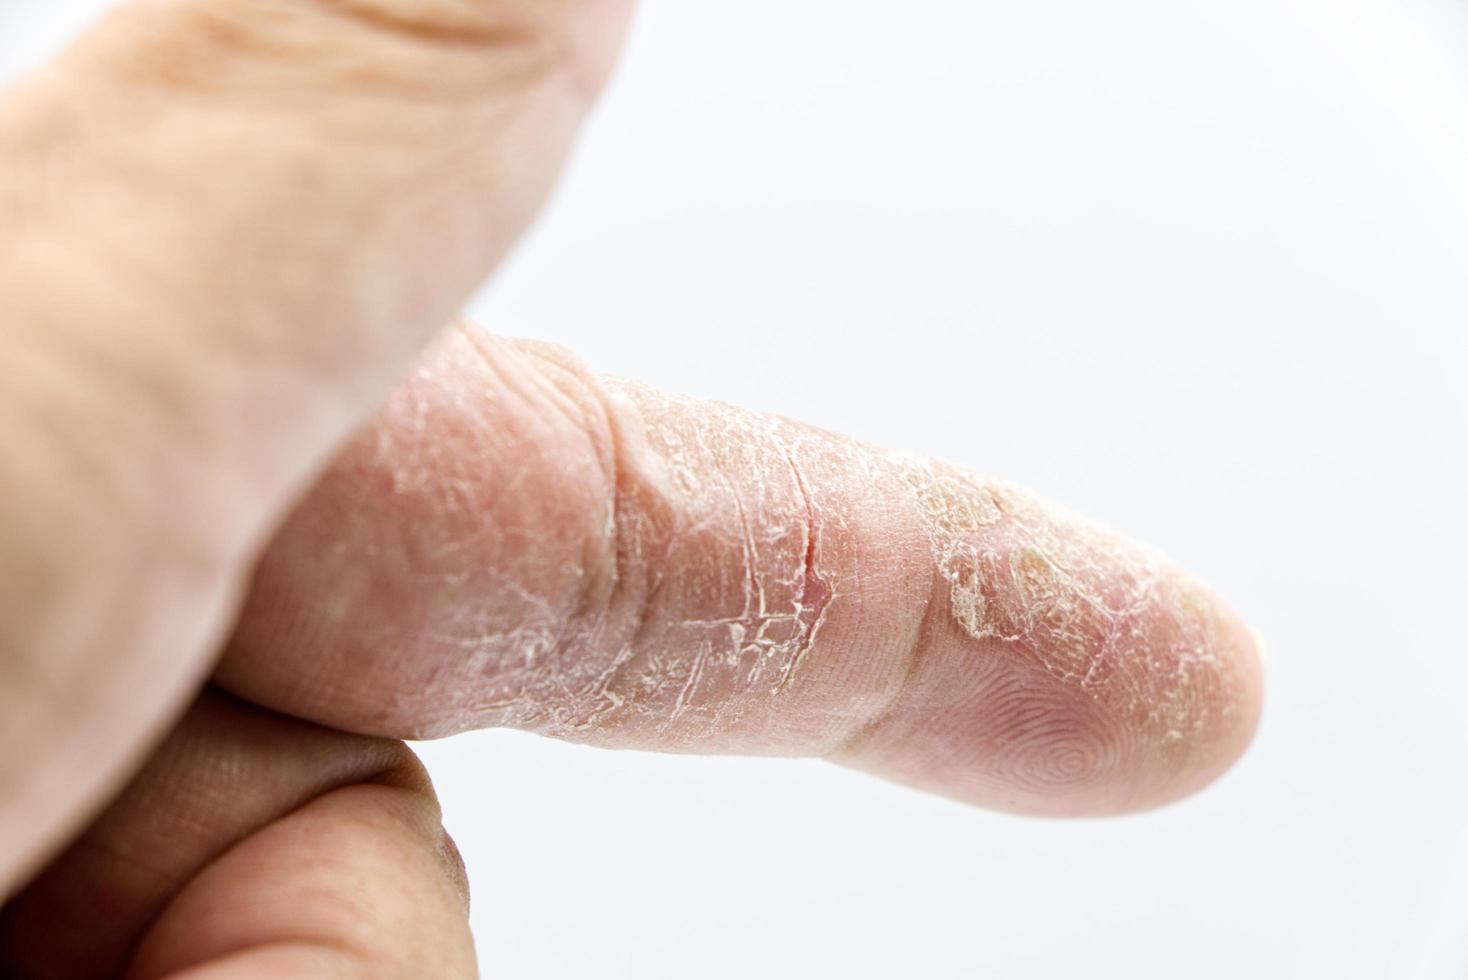 index finger skin disease on white background photo